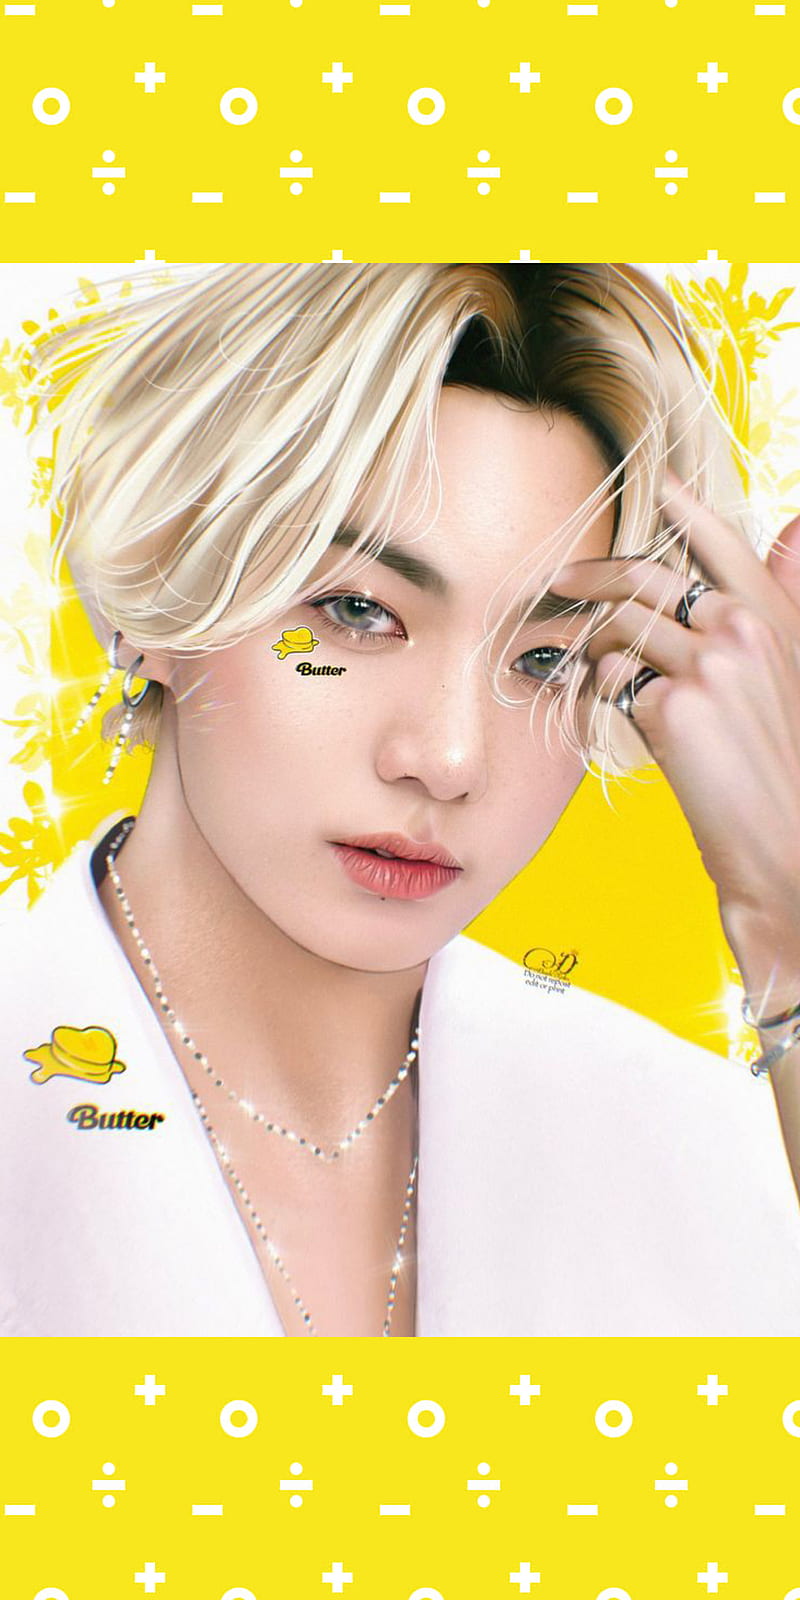 Butter kook, bts, yellow, jungkook, love k-pop, HD phone wallpaper